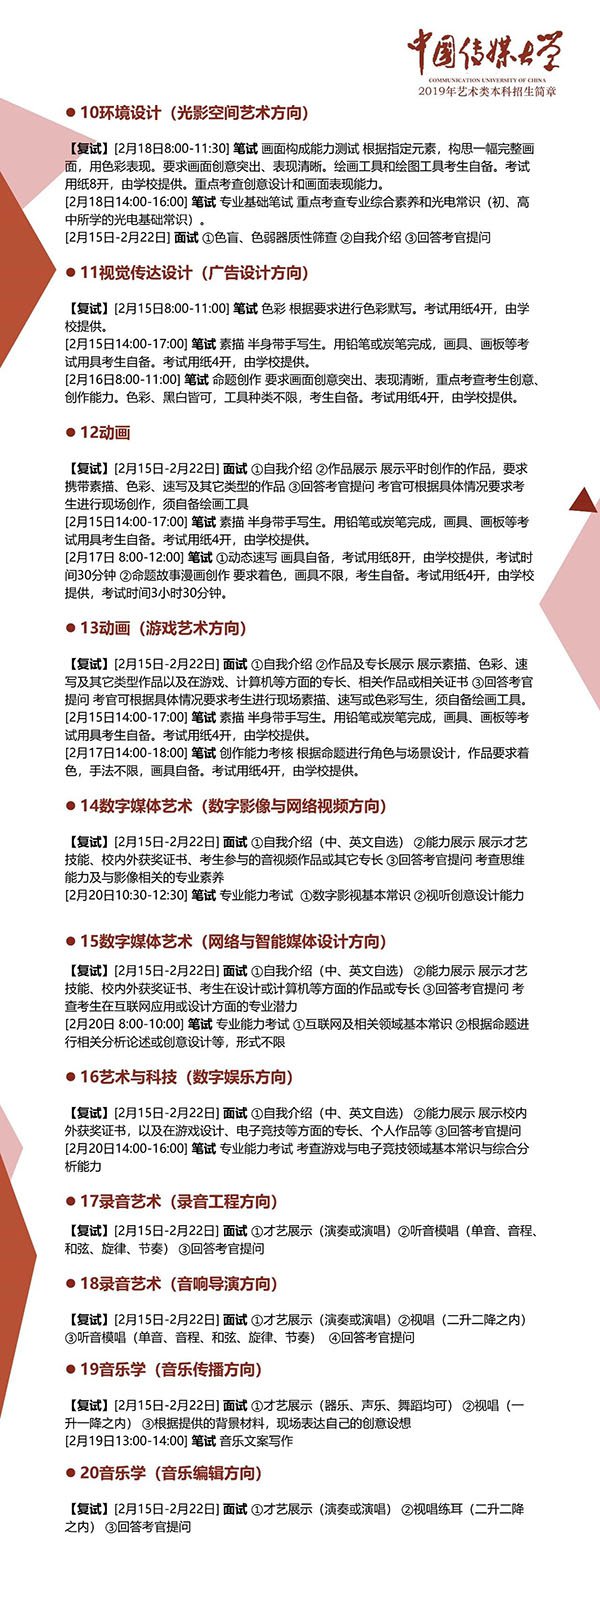 中国传媒大学2019年艺术类本科招生简章发布！报名时间11月28日-12月23日！